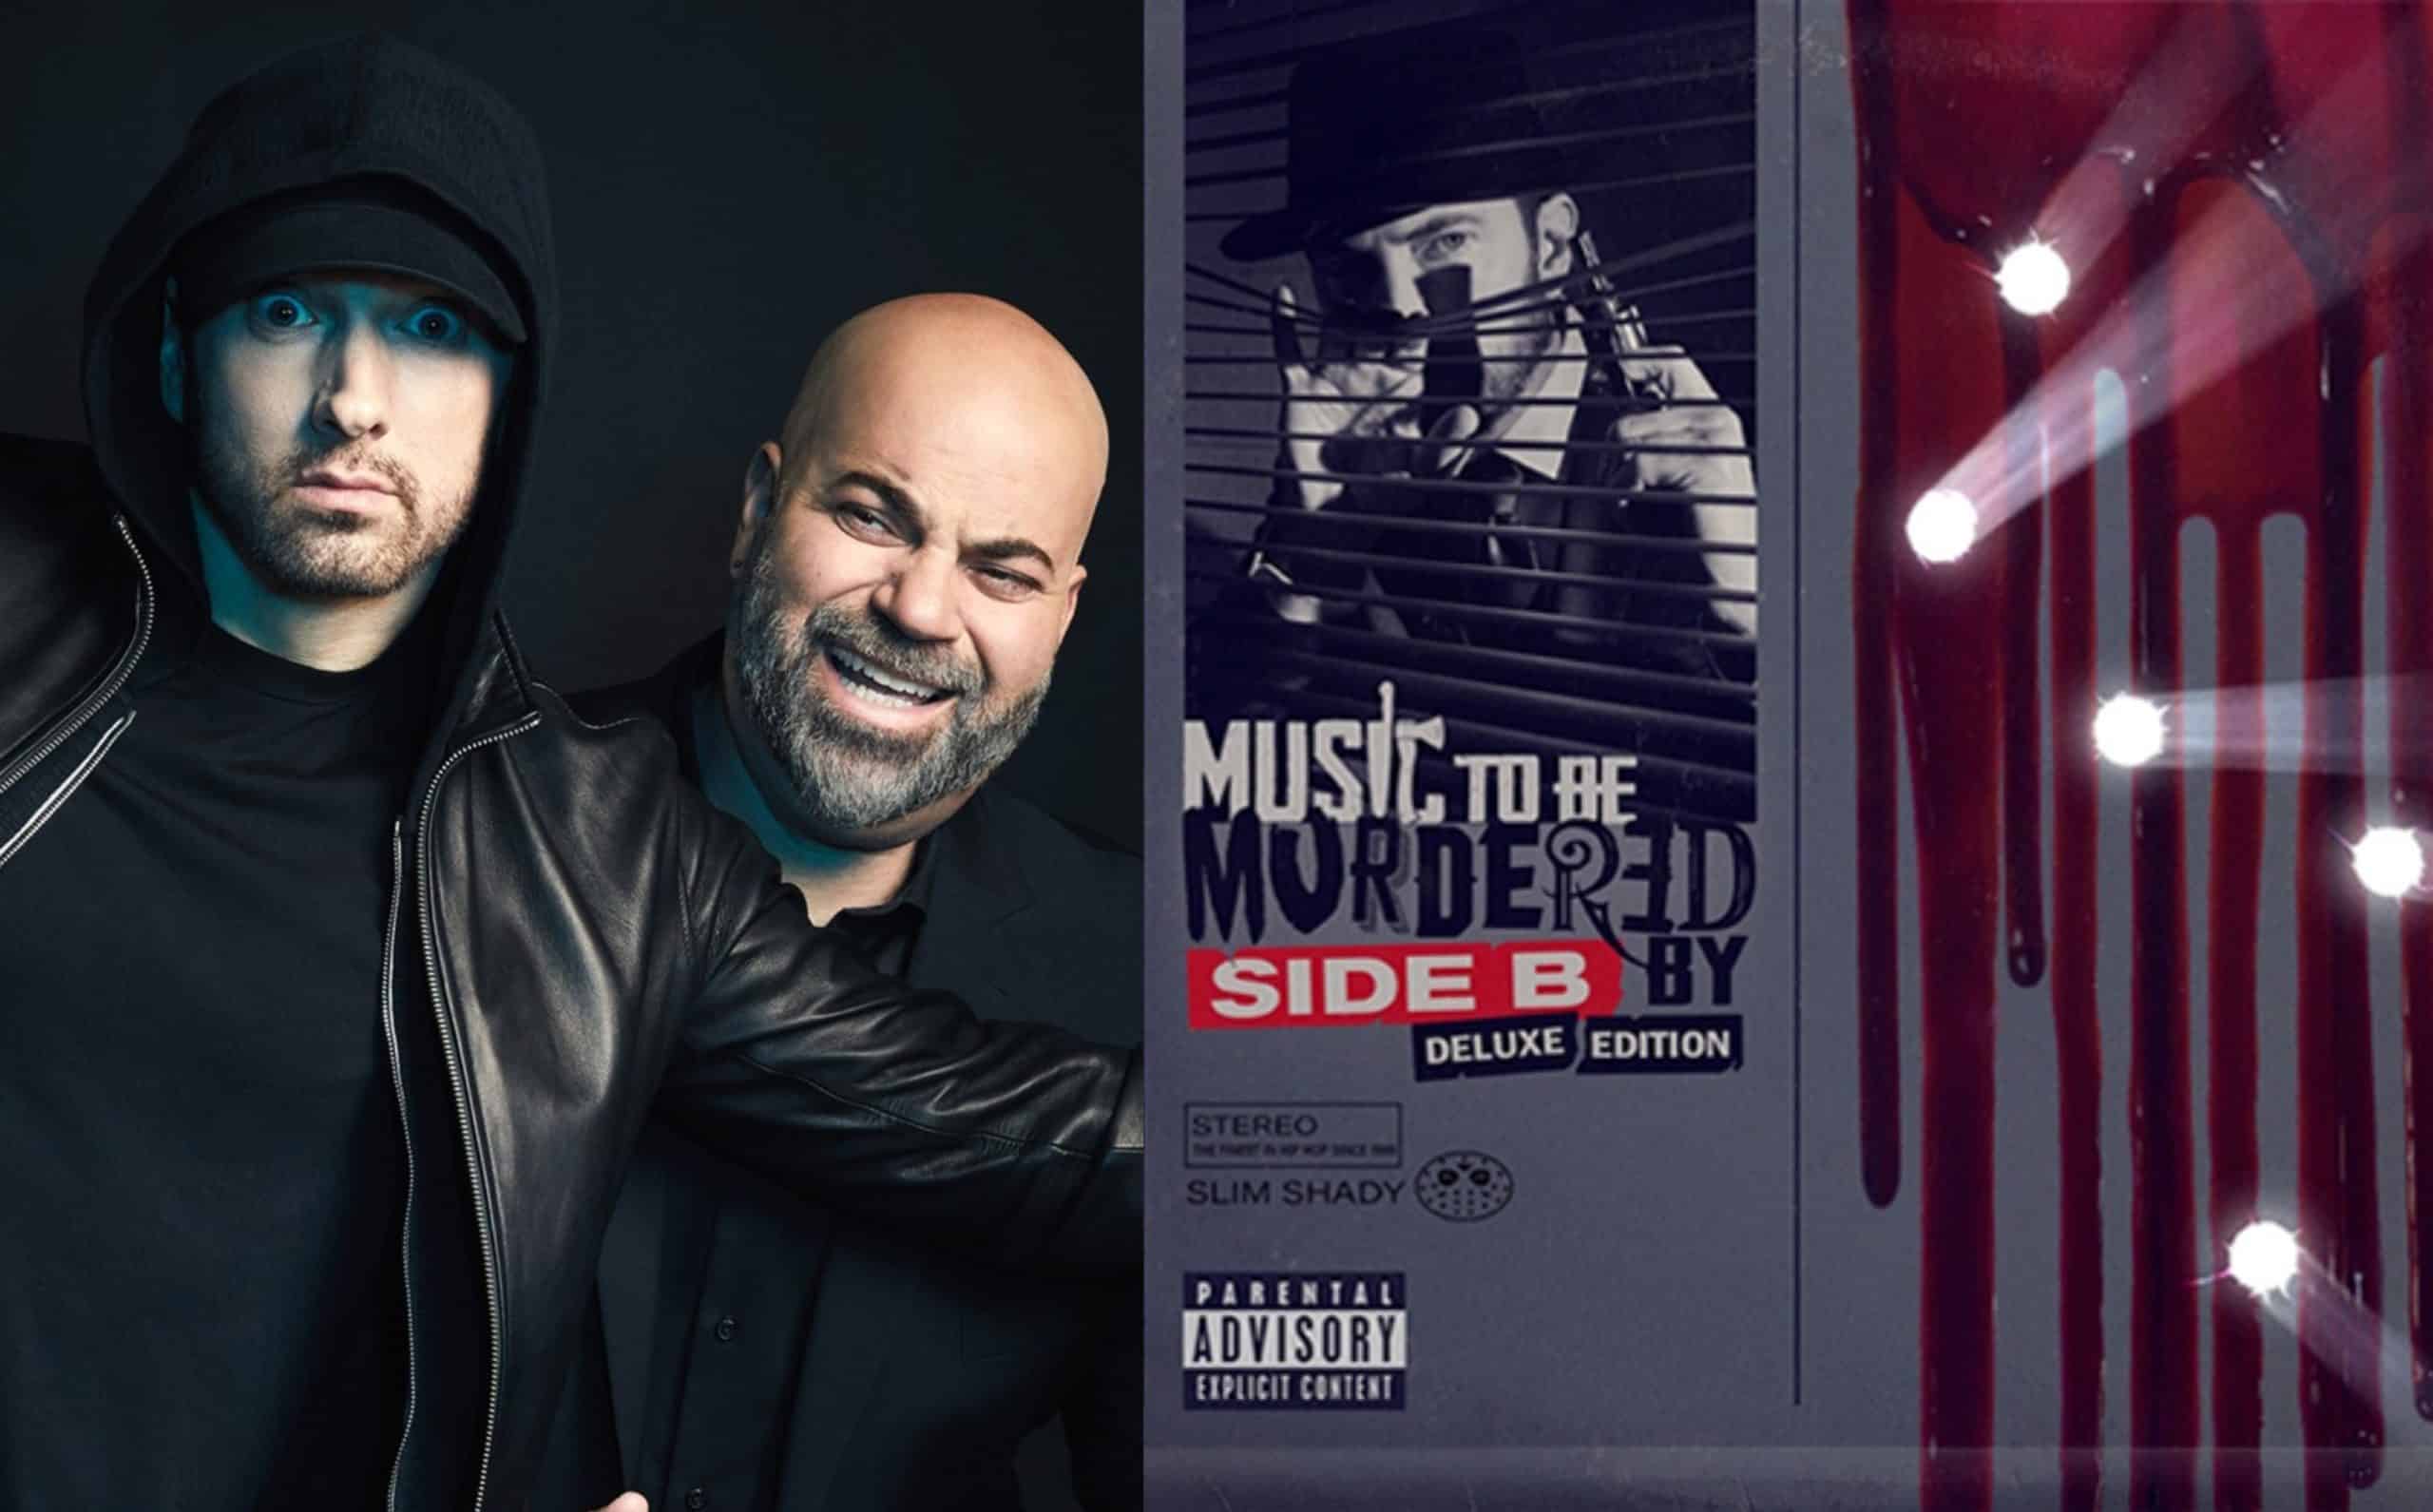 Eminem's Manager Paul Rosenberg Shows Gratitude To Fans For Streaming MTBMB Side-B